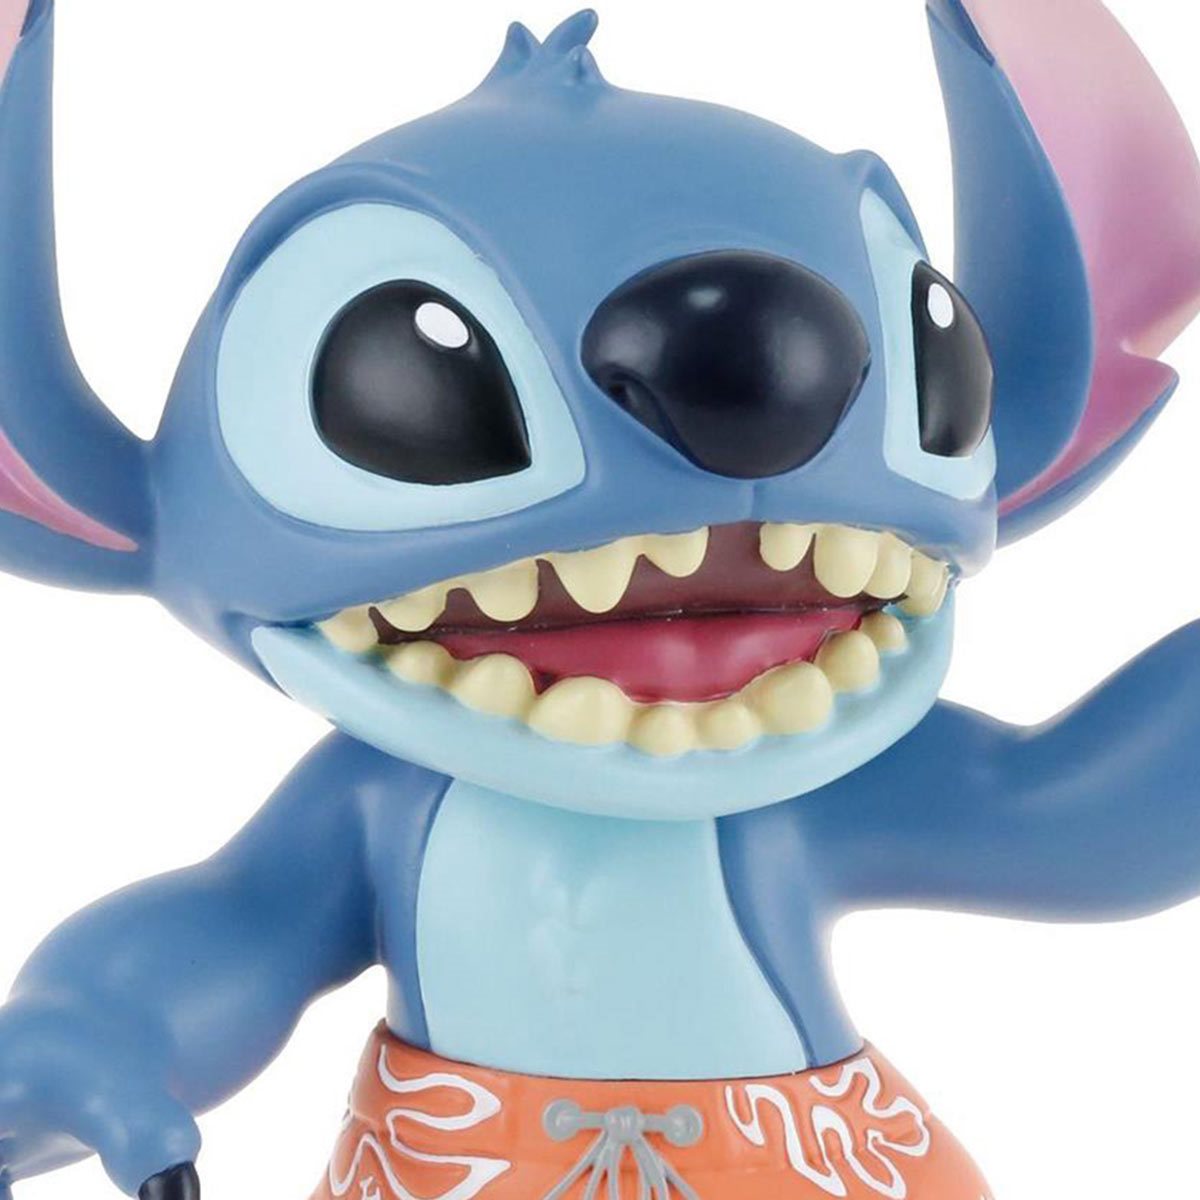  Enesco Disney Showcase Lilo and Stitch Doll Mini